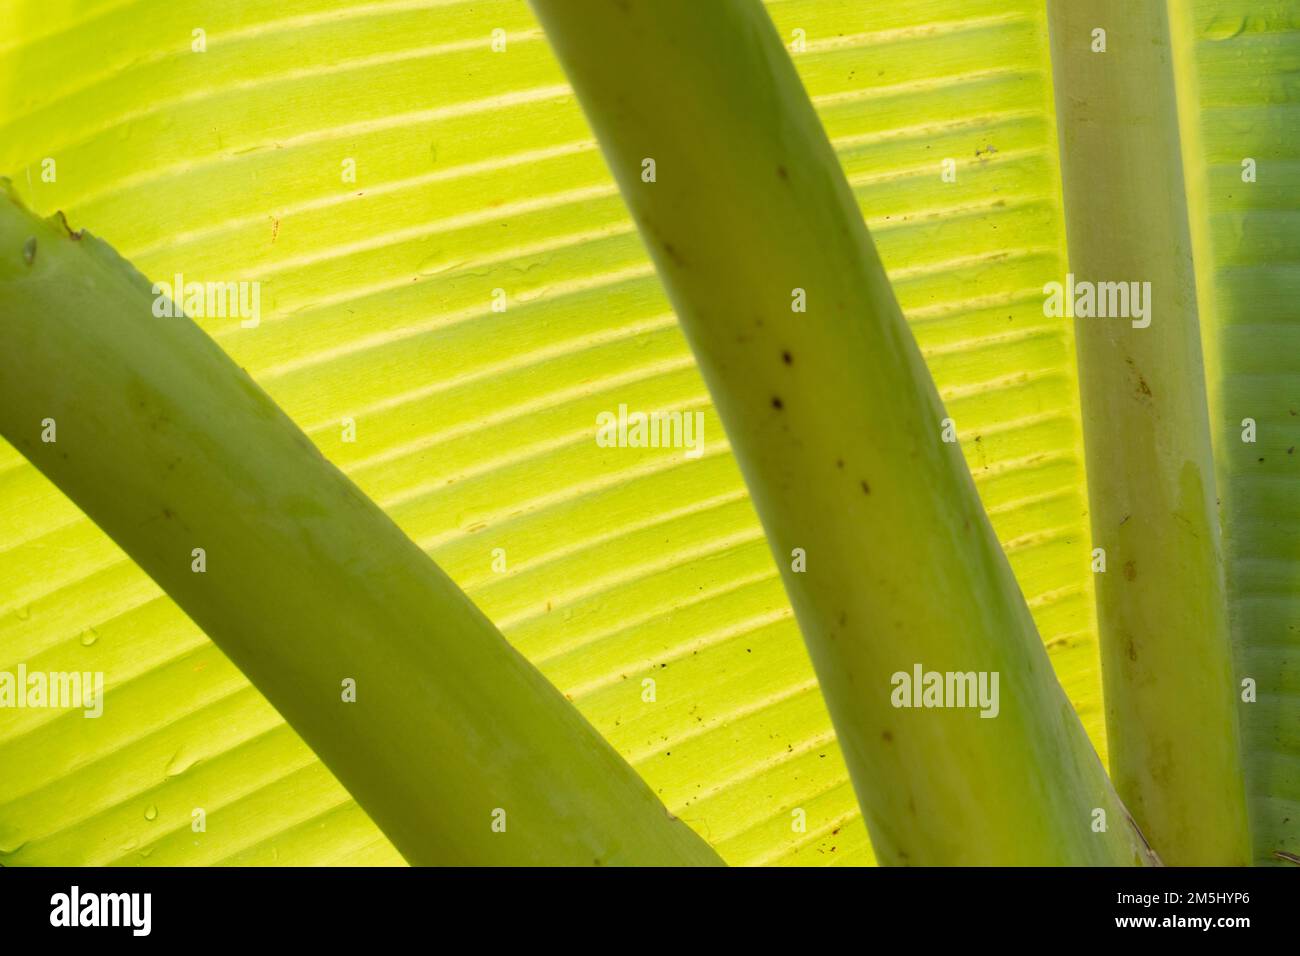 Riassunto astratto della foglia di banana retroilluminata. Foto Stock